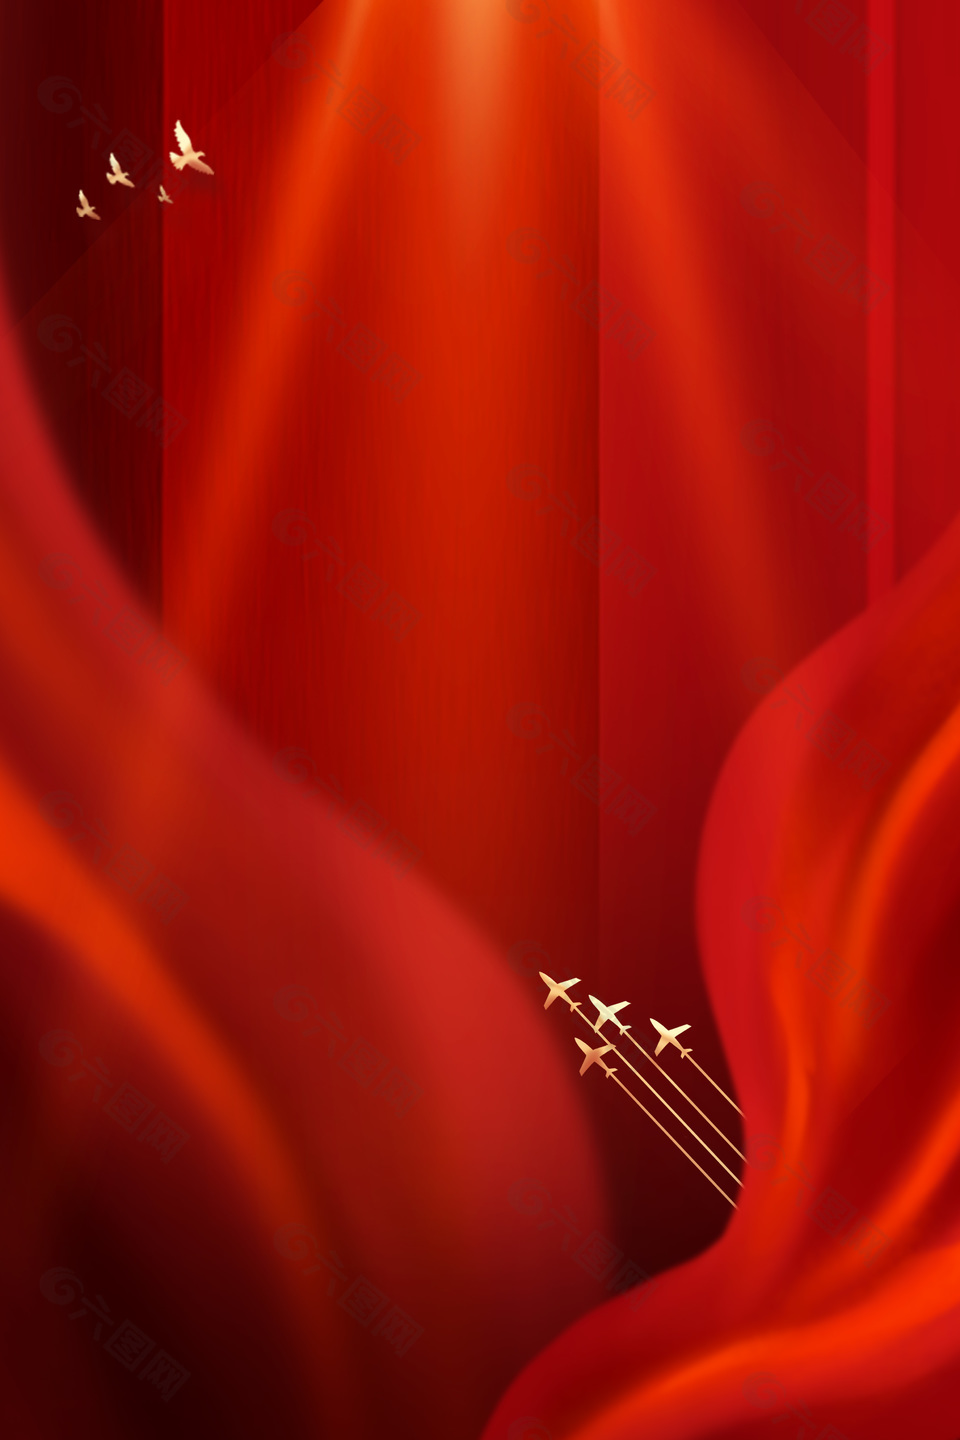 絲綢質感紅色大氣國慶背景素材